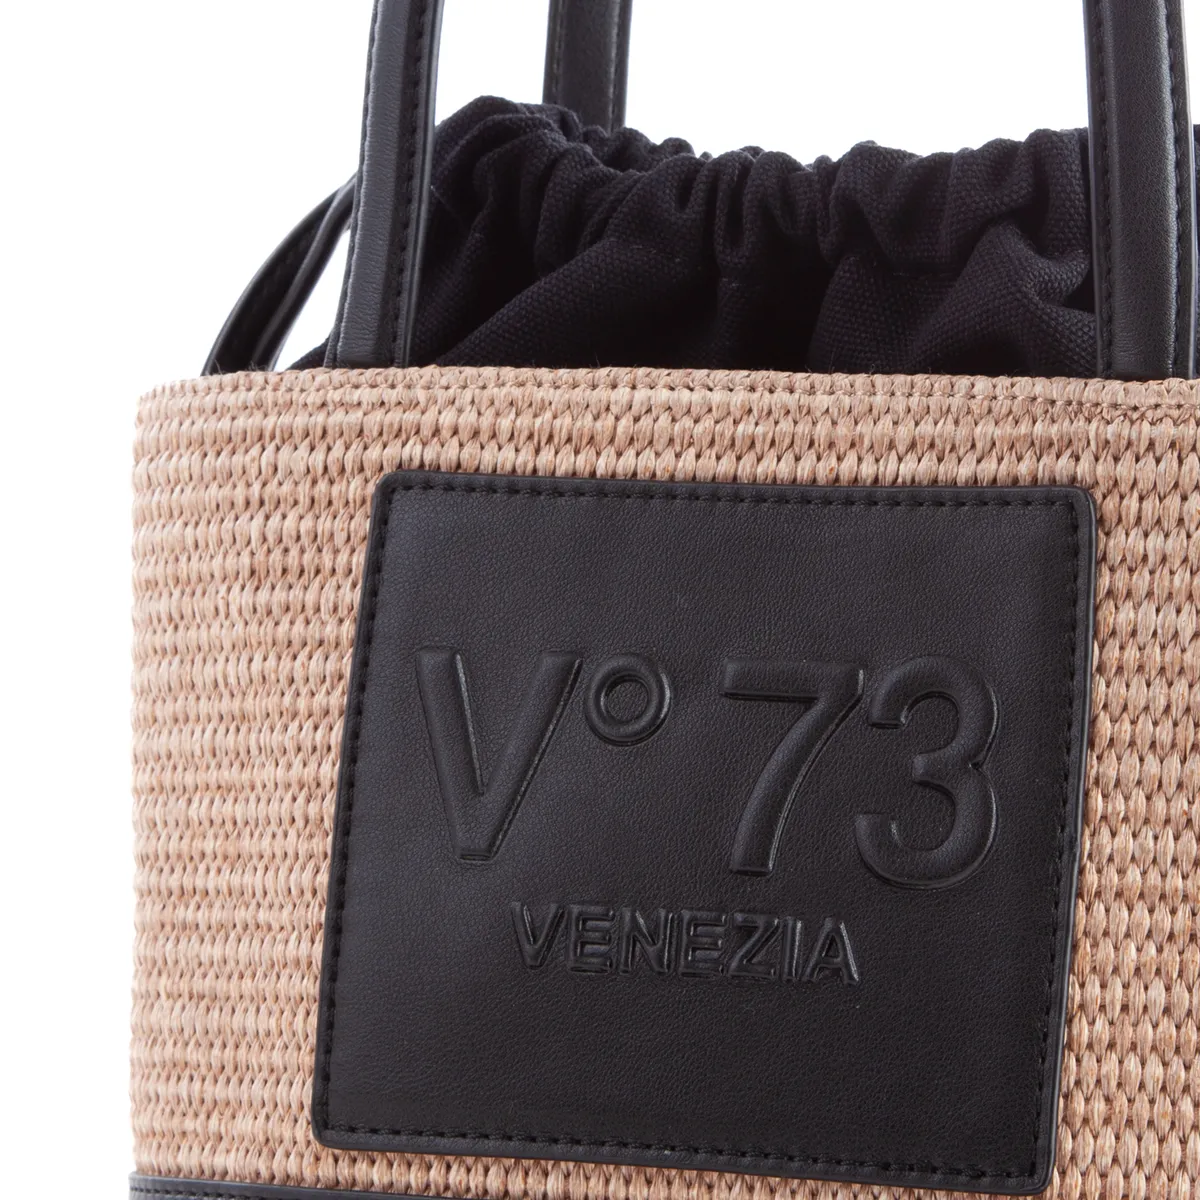 Vº73 bolso tipo judas en rafia combinado natural  y negro - 3